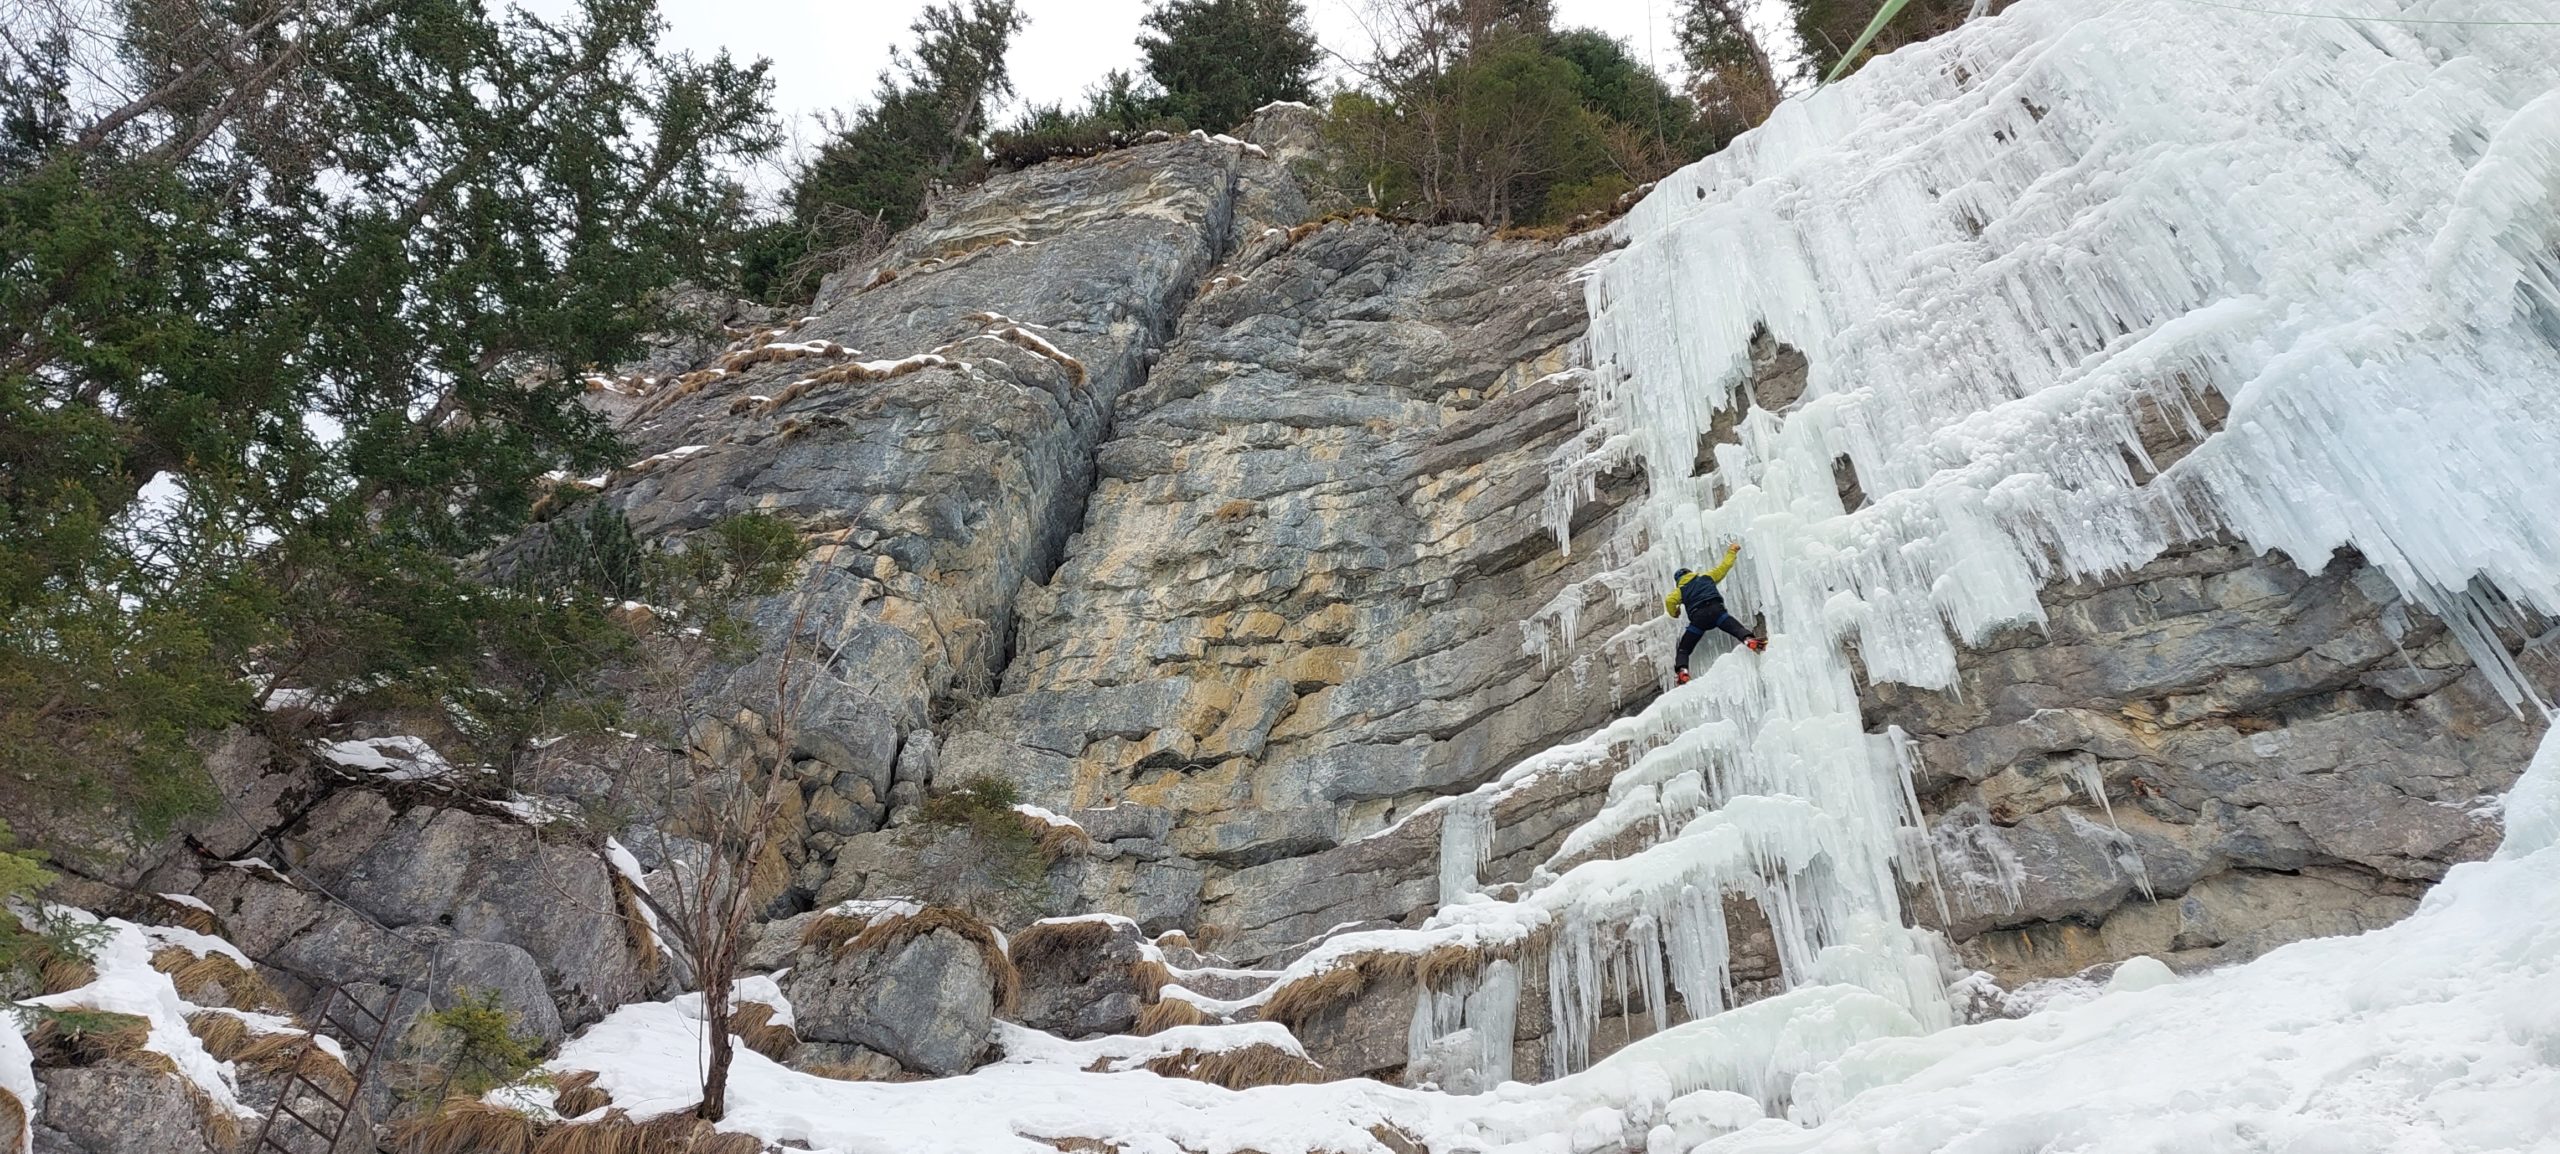 7 piolets pour la cascade de glace et l'alpinisme testés par la